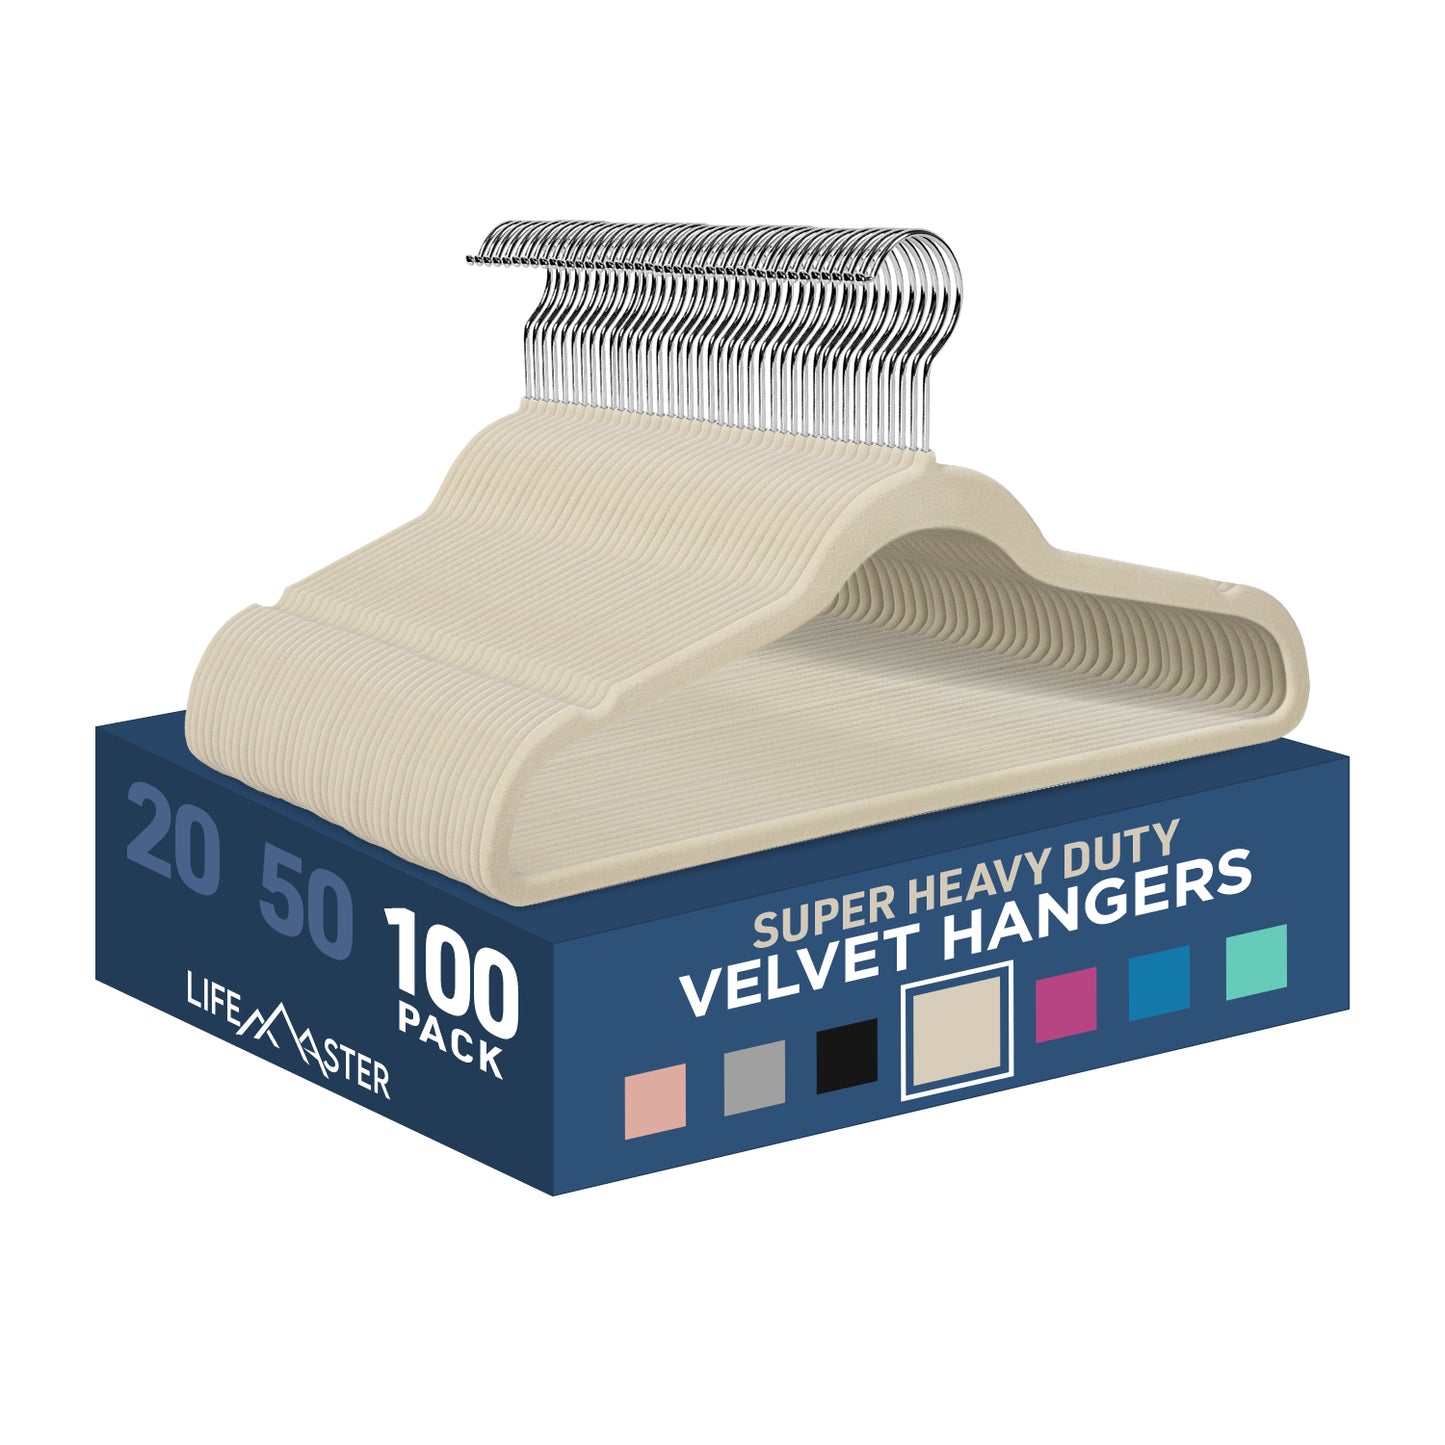 LifeMaster Velvet Non-Slip Hangers - Ivory